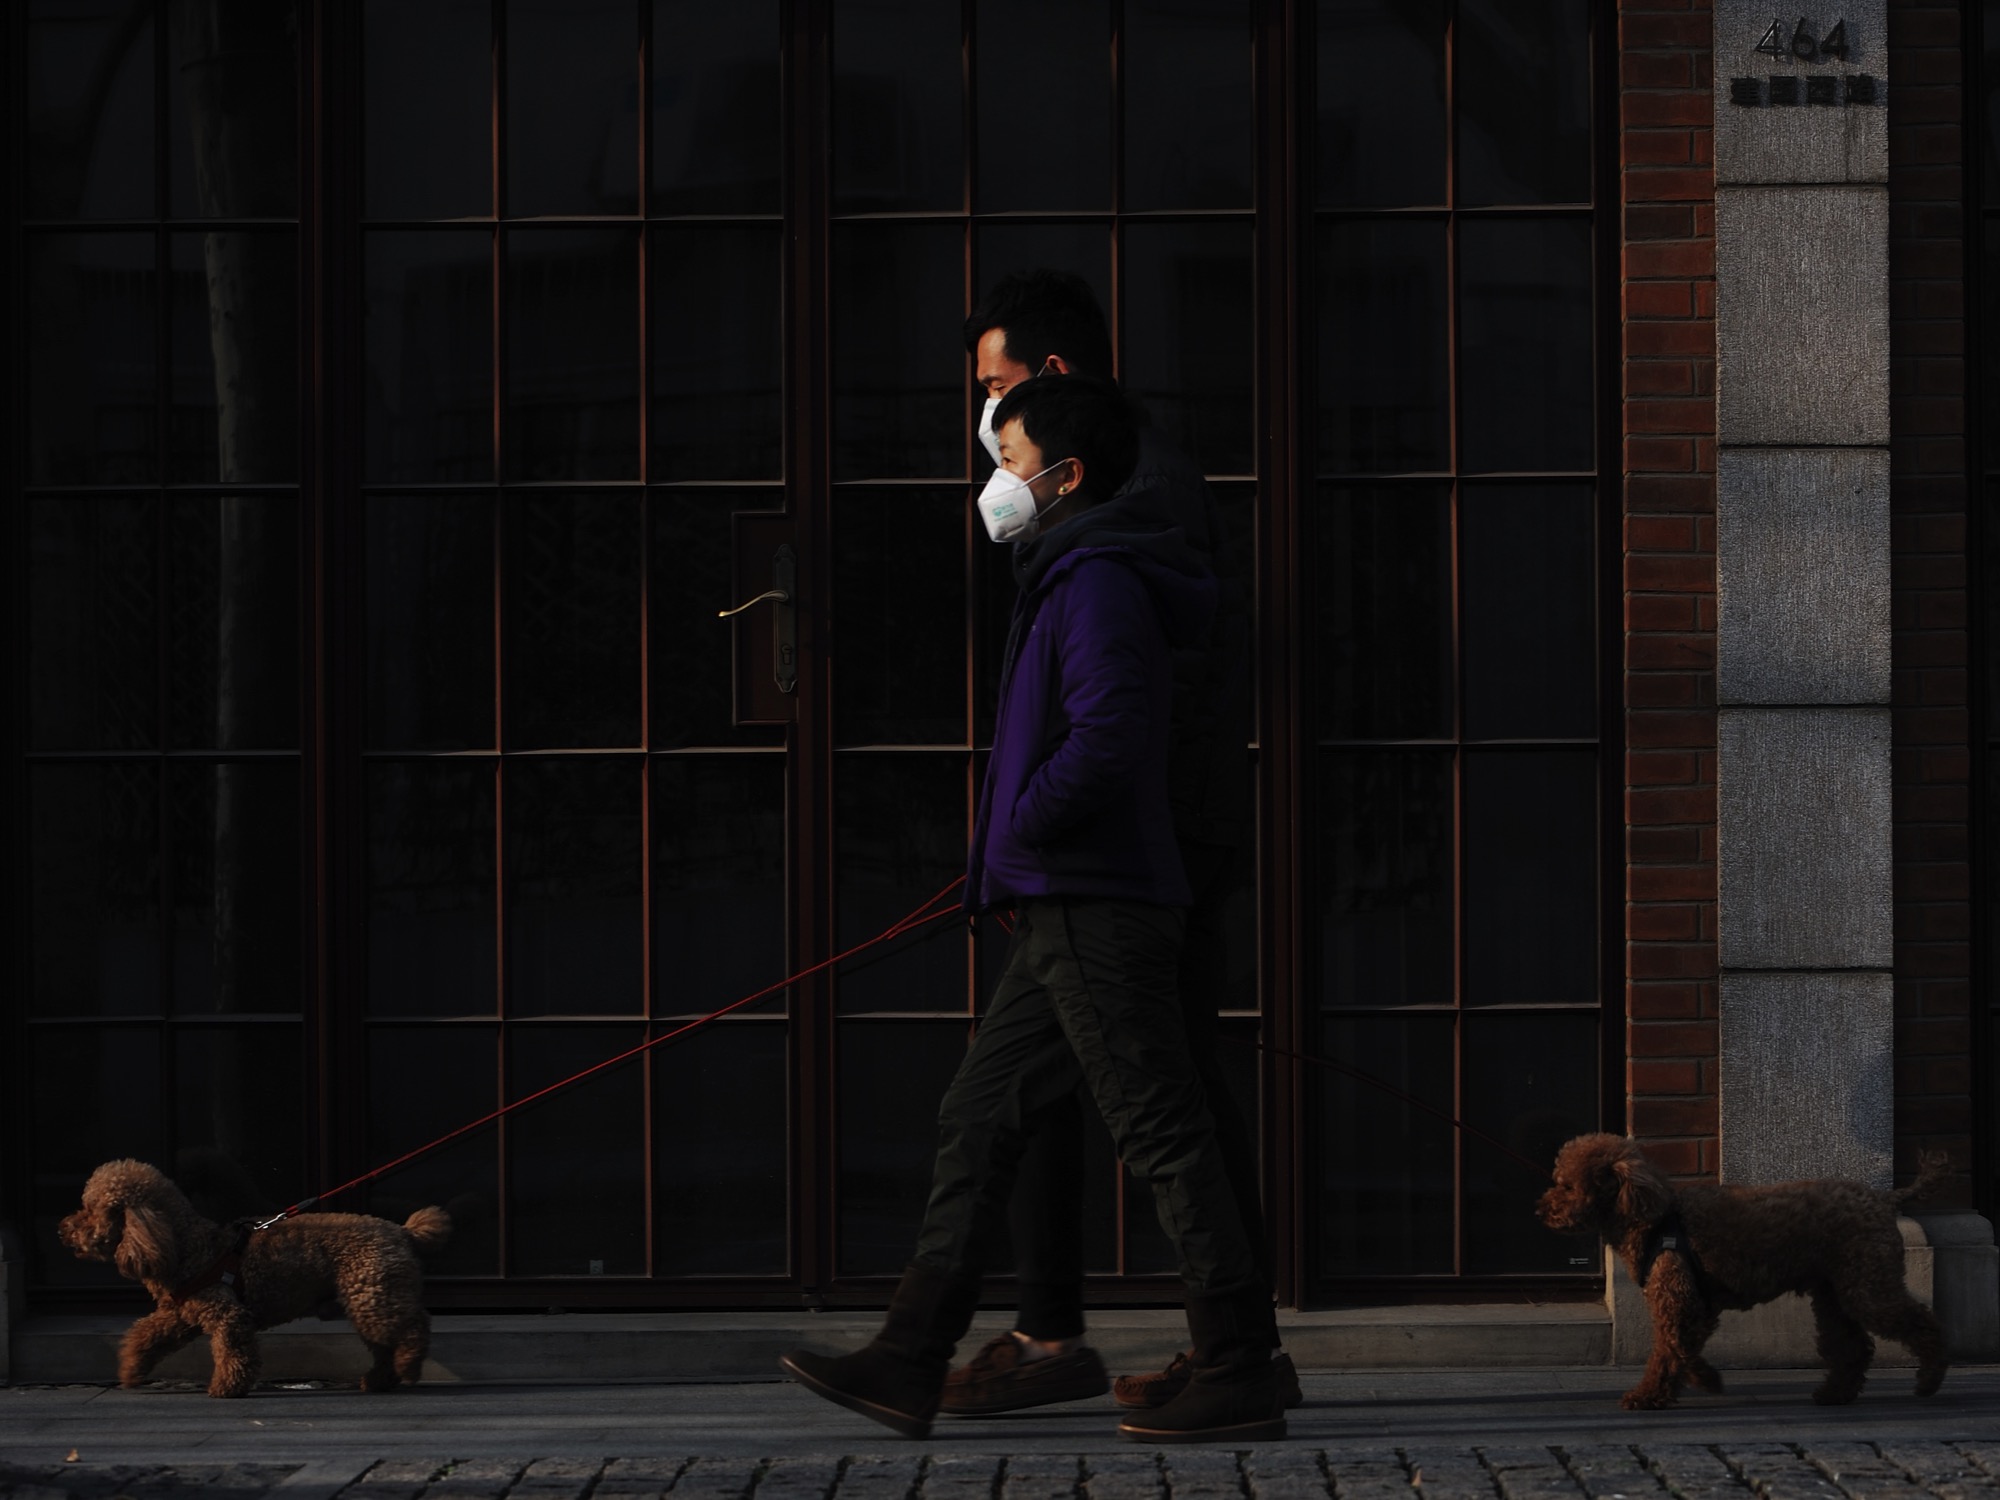 people wearing masks walking their dogs